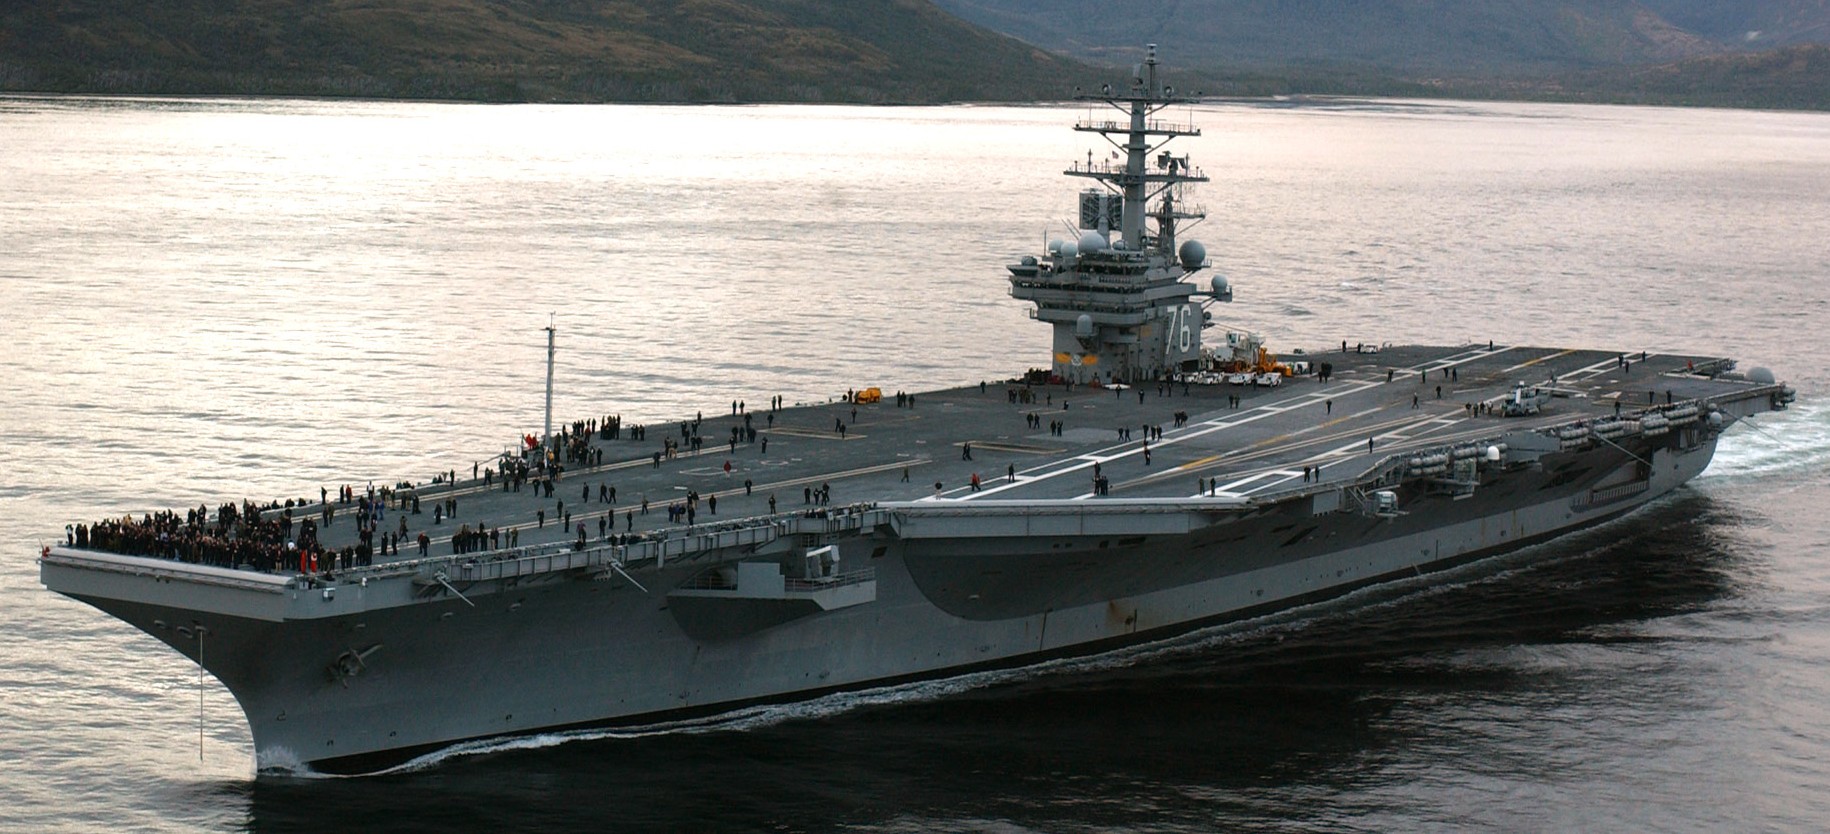 cvn-76 uss ronald reagan aircraft carrier straits of magellan 2004 10